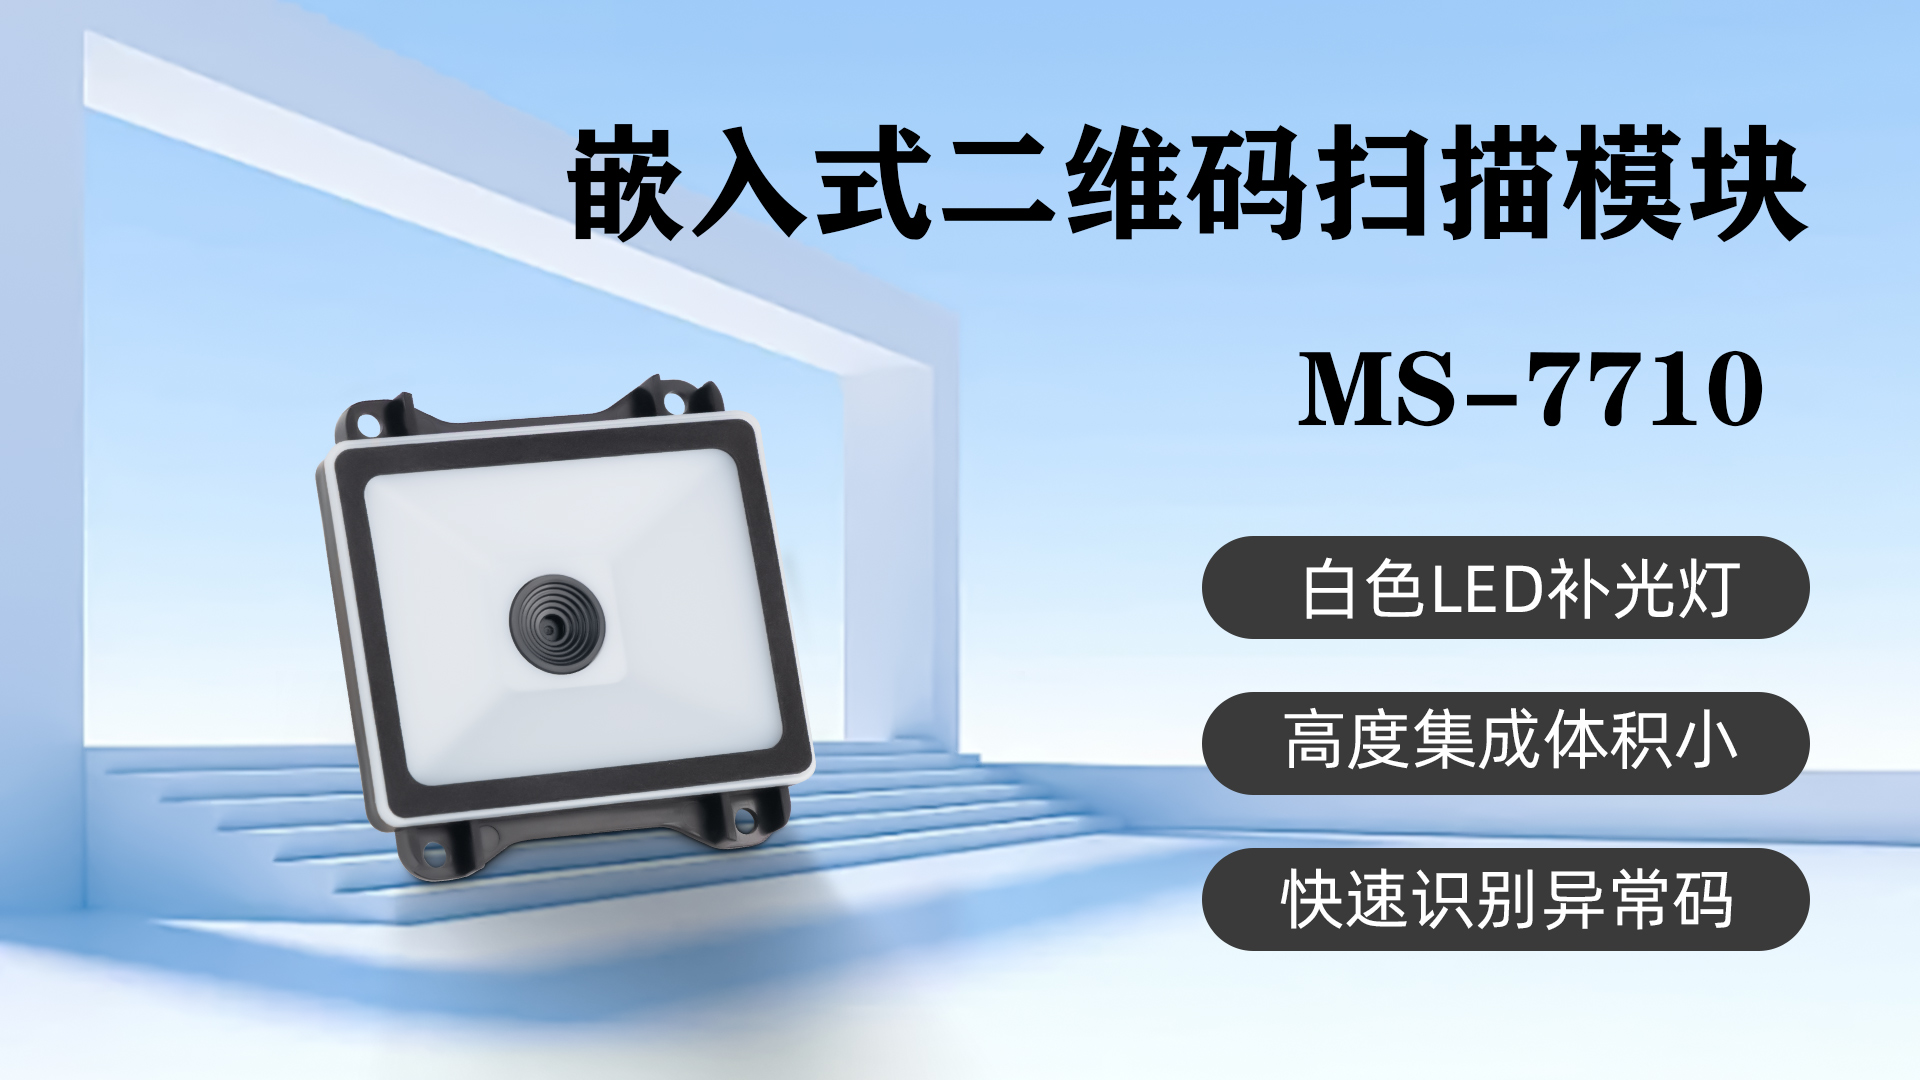 美松嵌入式扫描模块MS-7710应用于银行二维码核销设备